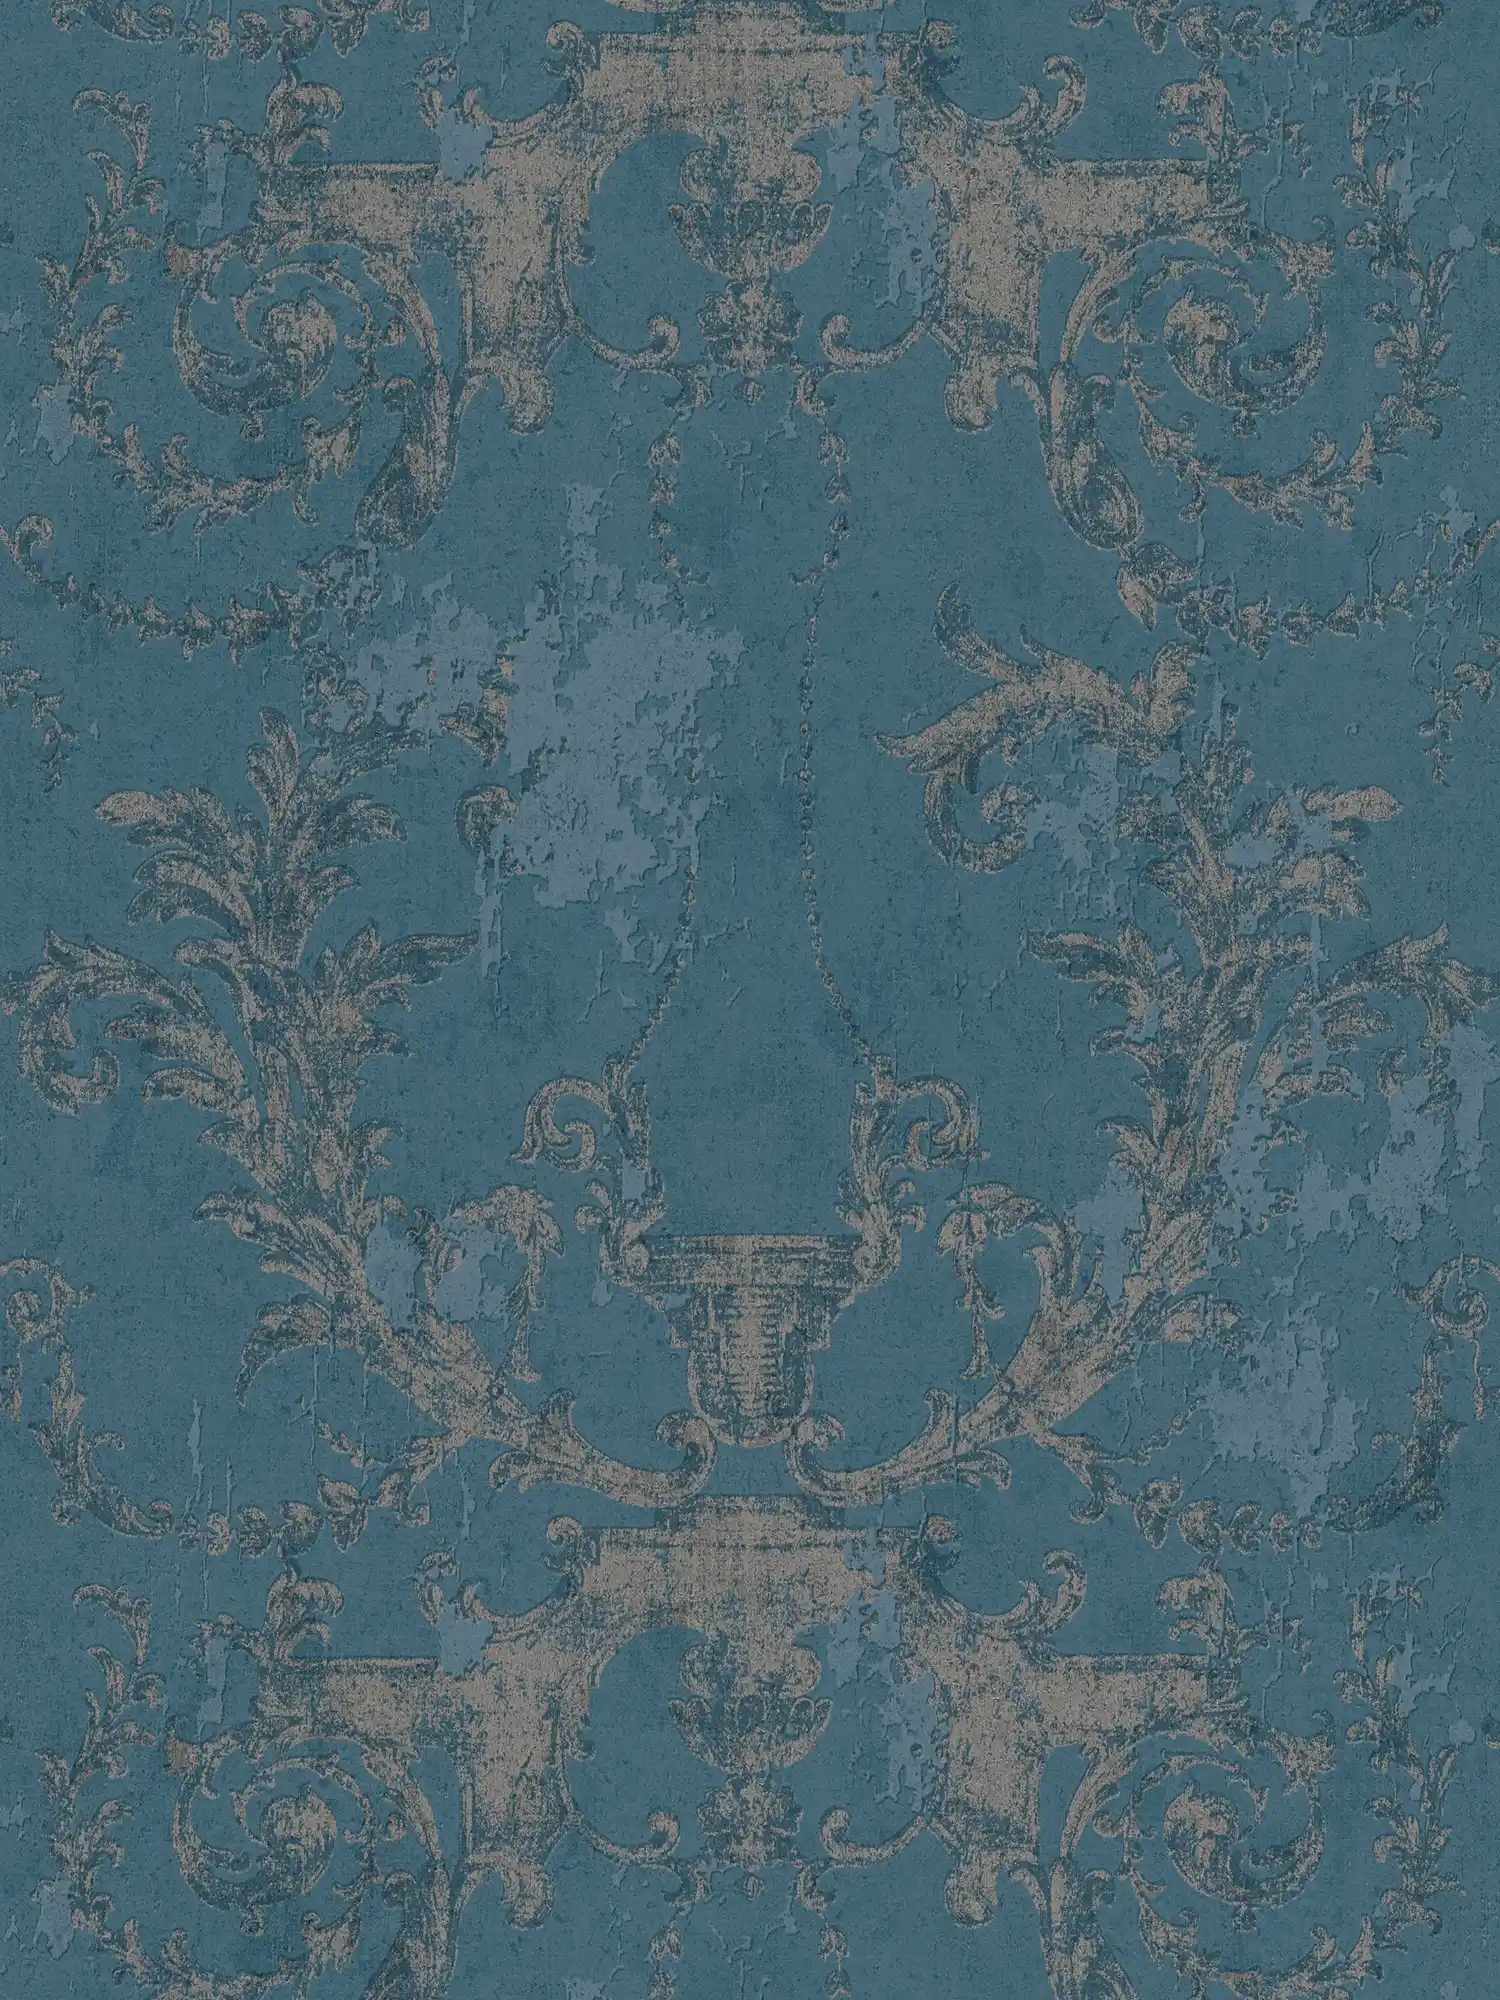 Papier peint ornemental style vintage & rustique - bleu, argenté
